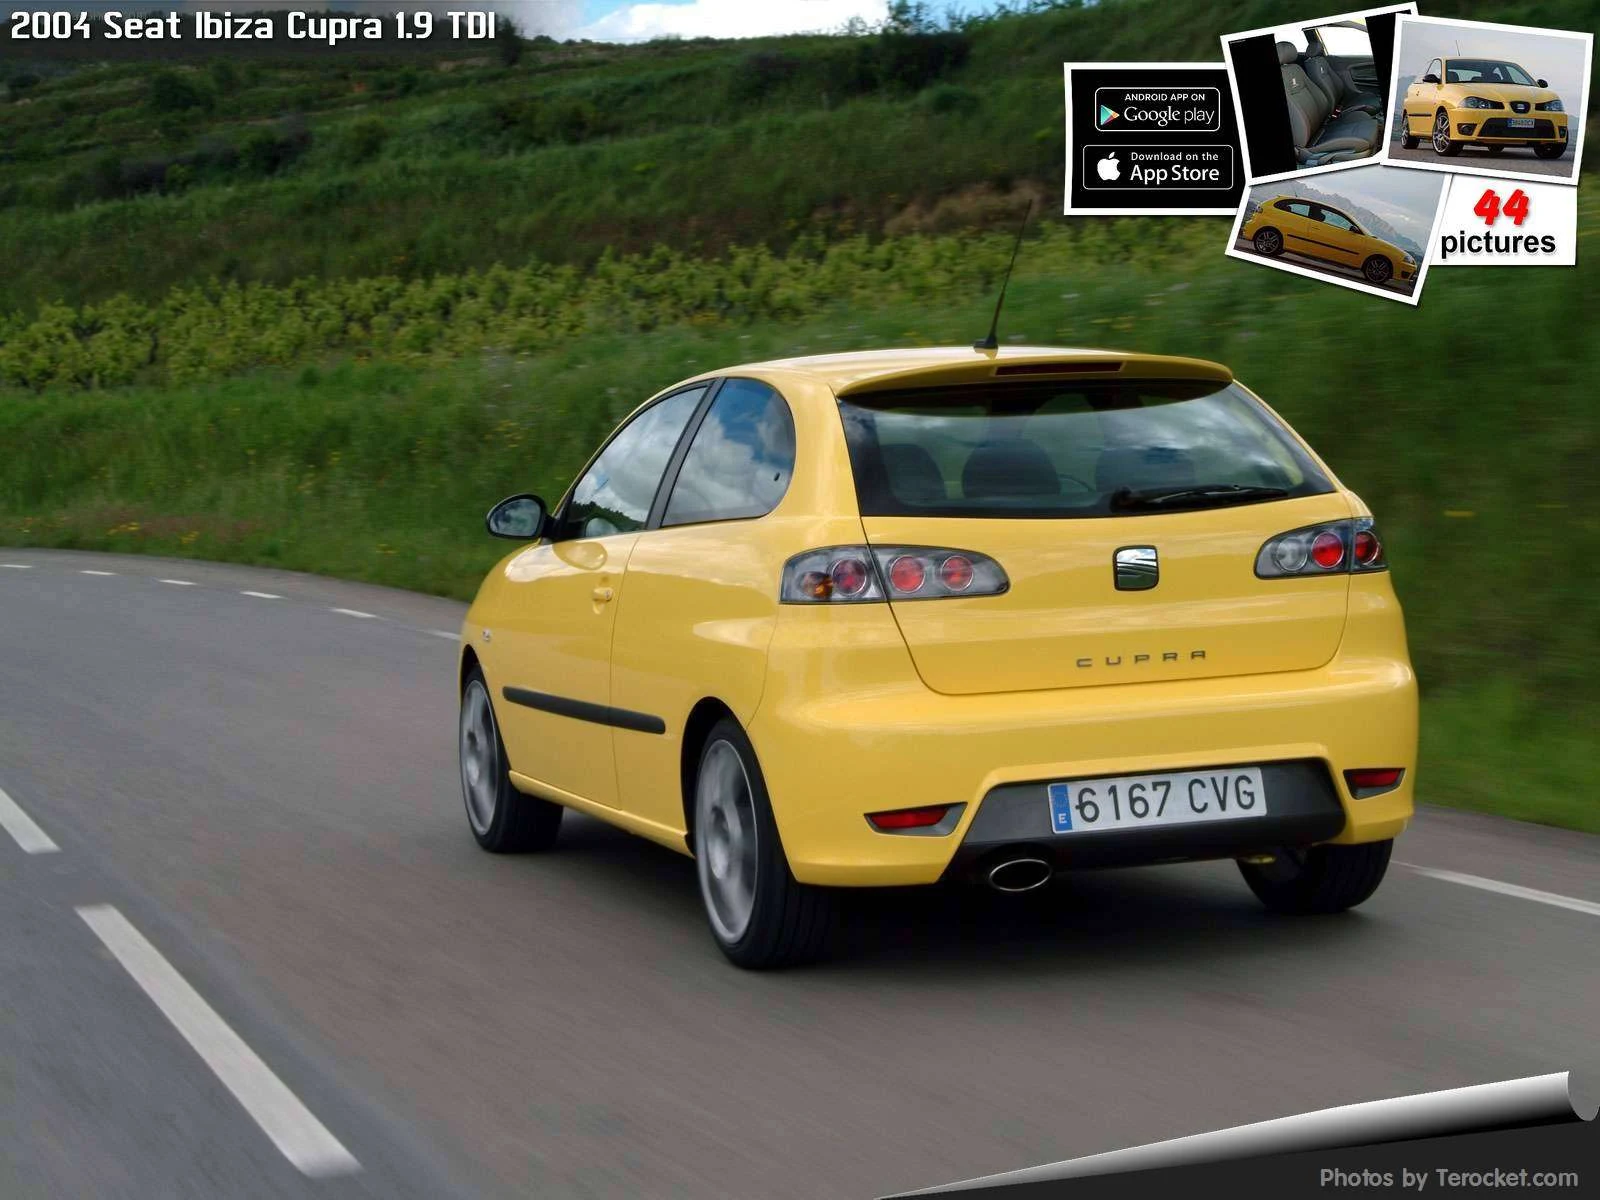 Hình ảnh xe ô tô Seat Ibiza Cupra 1.9 TDI 2004 & nội ngoại thất